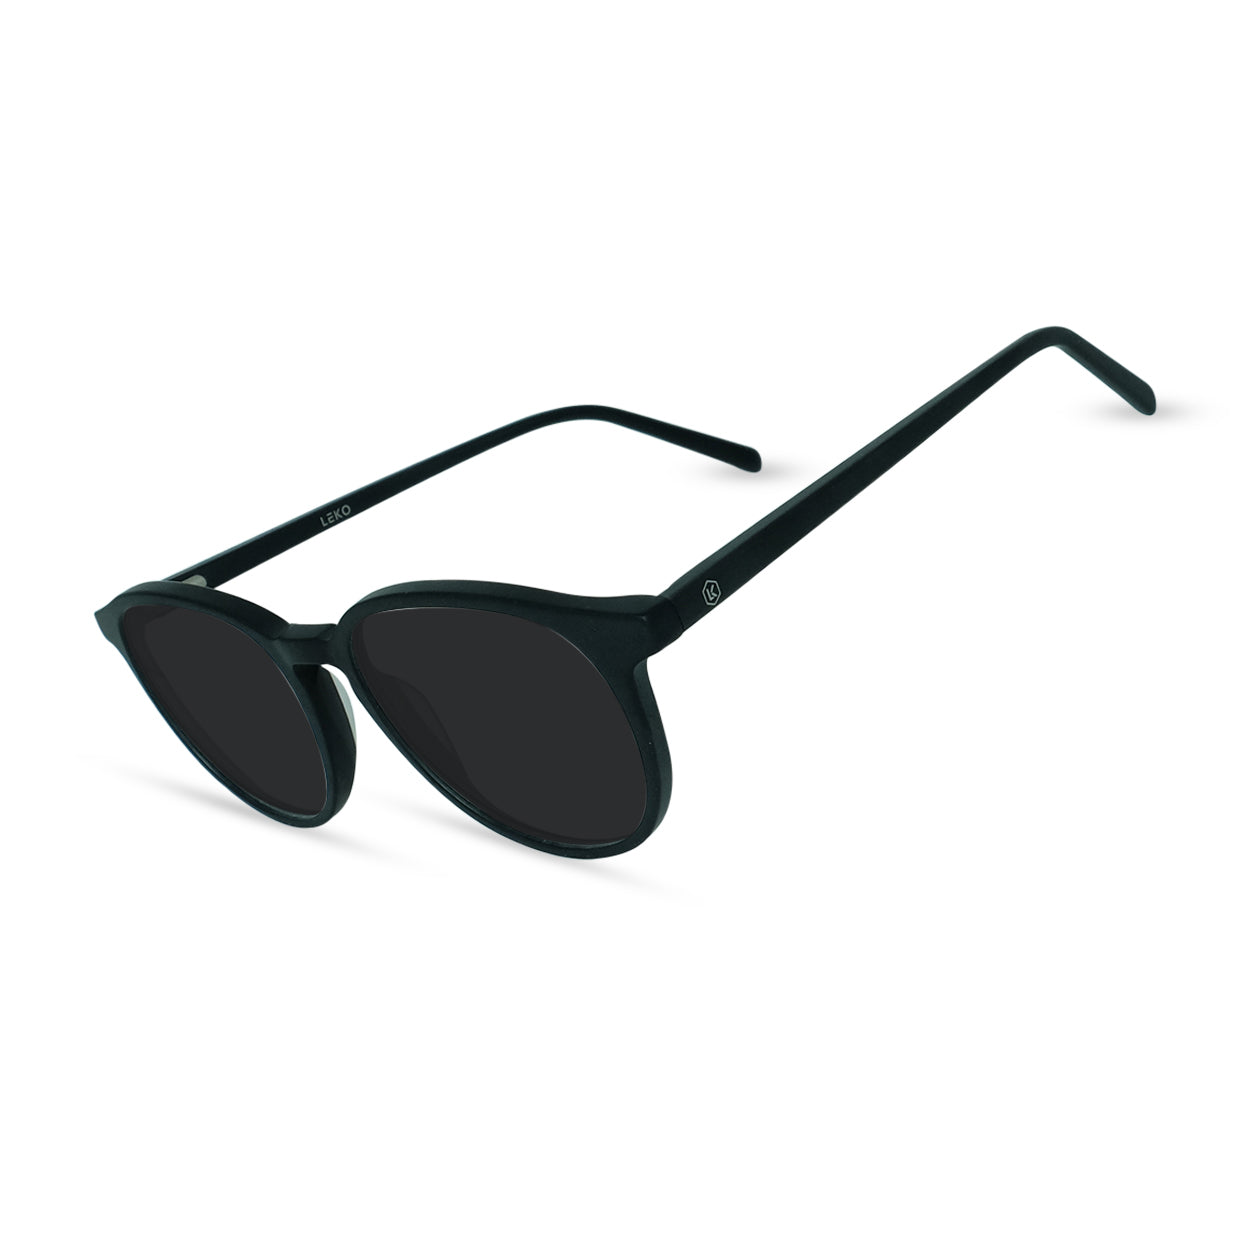 Eco Friendly Glasses in Matte Black / Sun